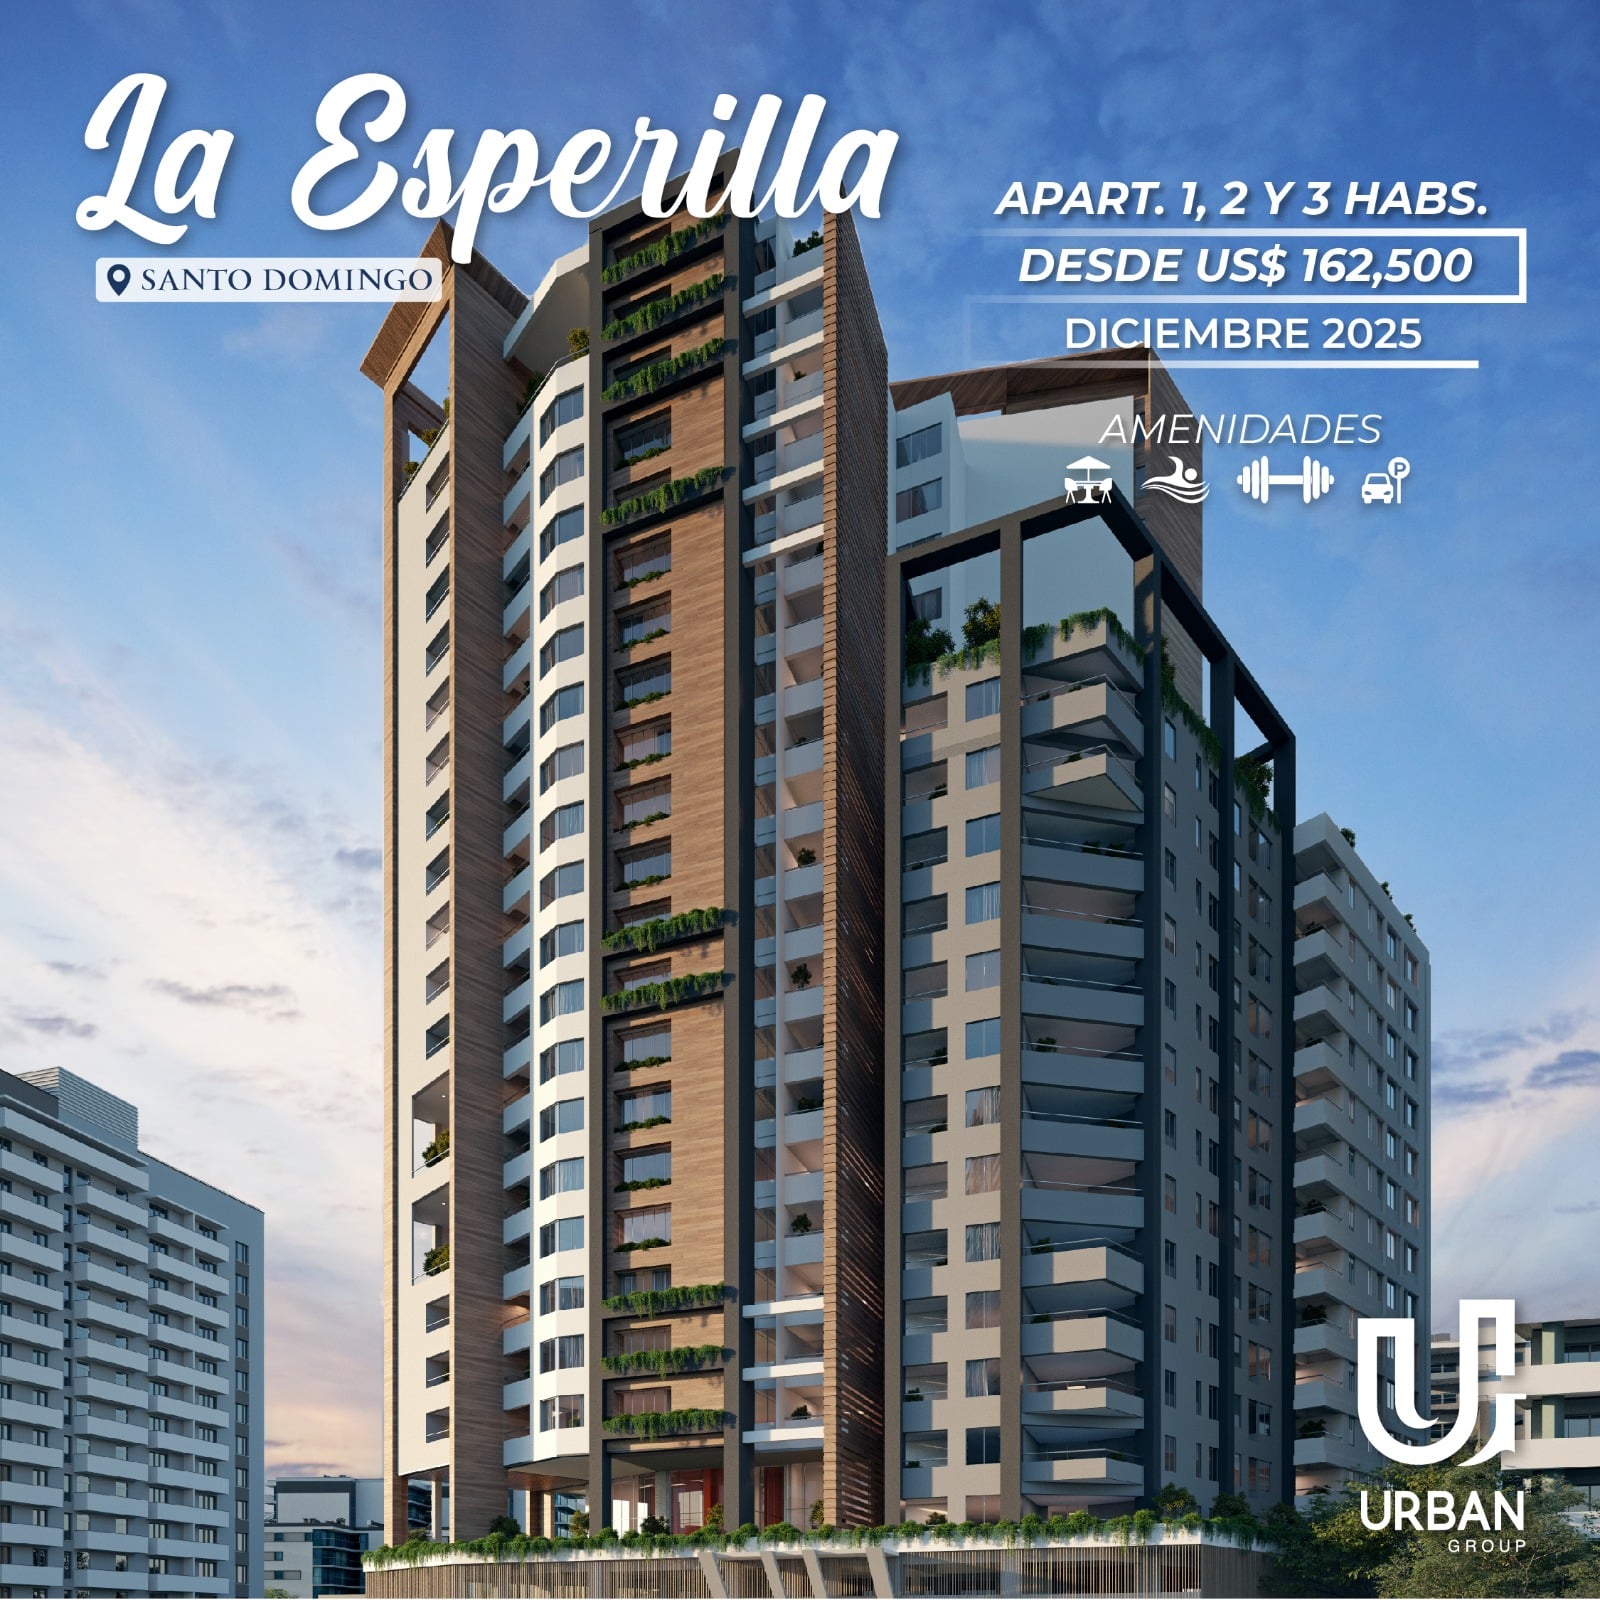 Apartamentos de 1, 2 & 3 Habitaciones Desde US$162,500 en La Esperilla